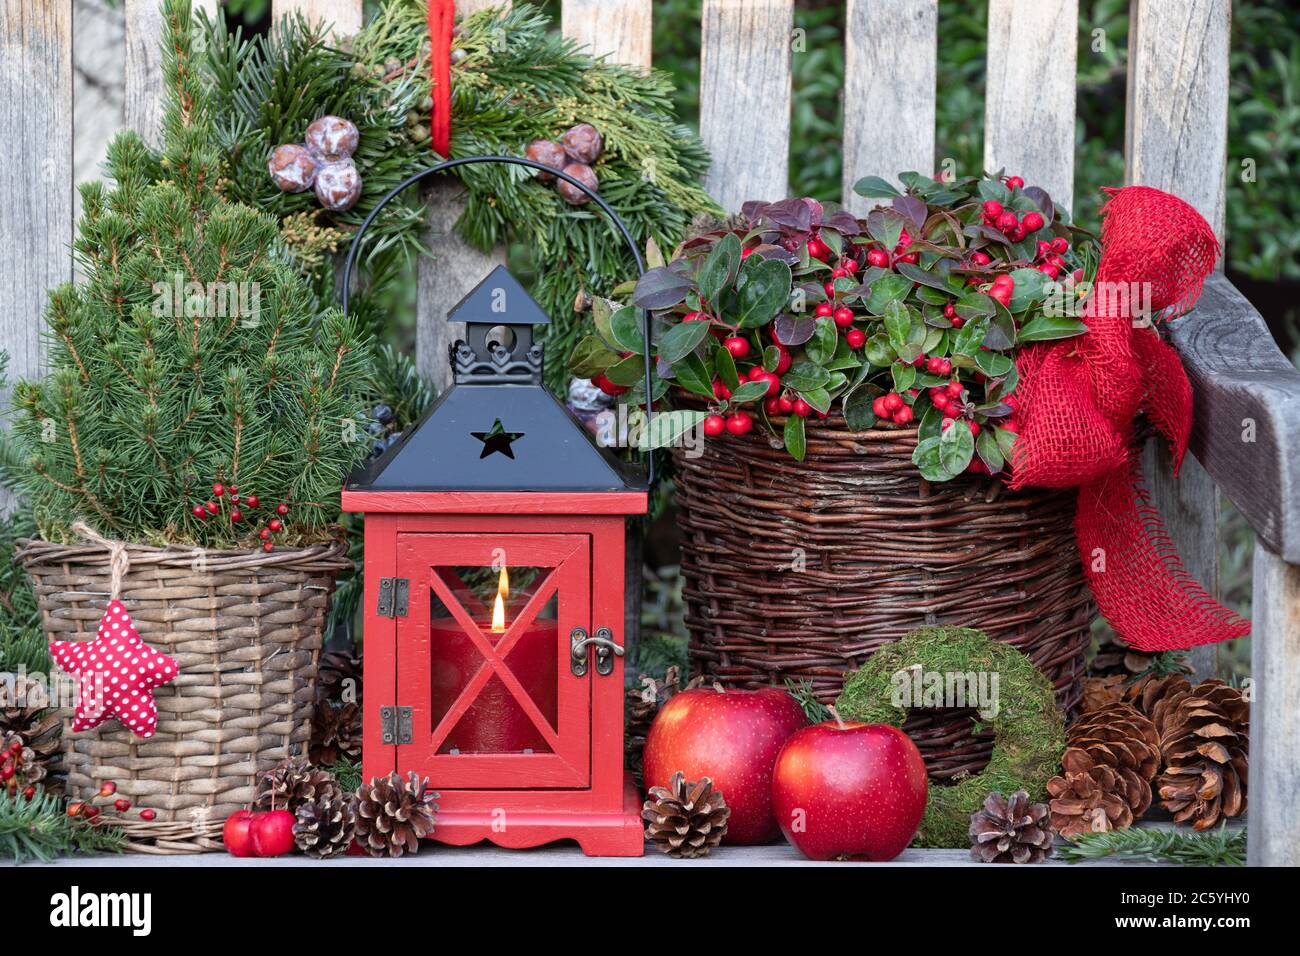 decorazioni natalizie rustiche con lanterna rossa e piante invernali in cesto Foto Stock